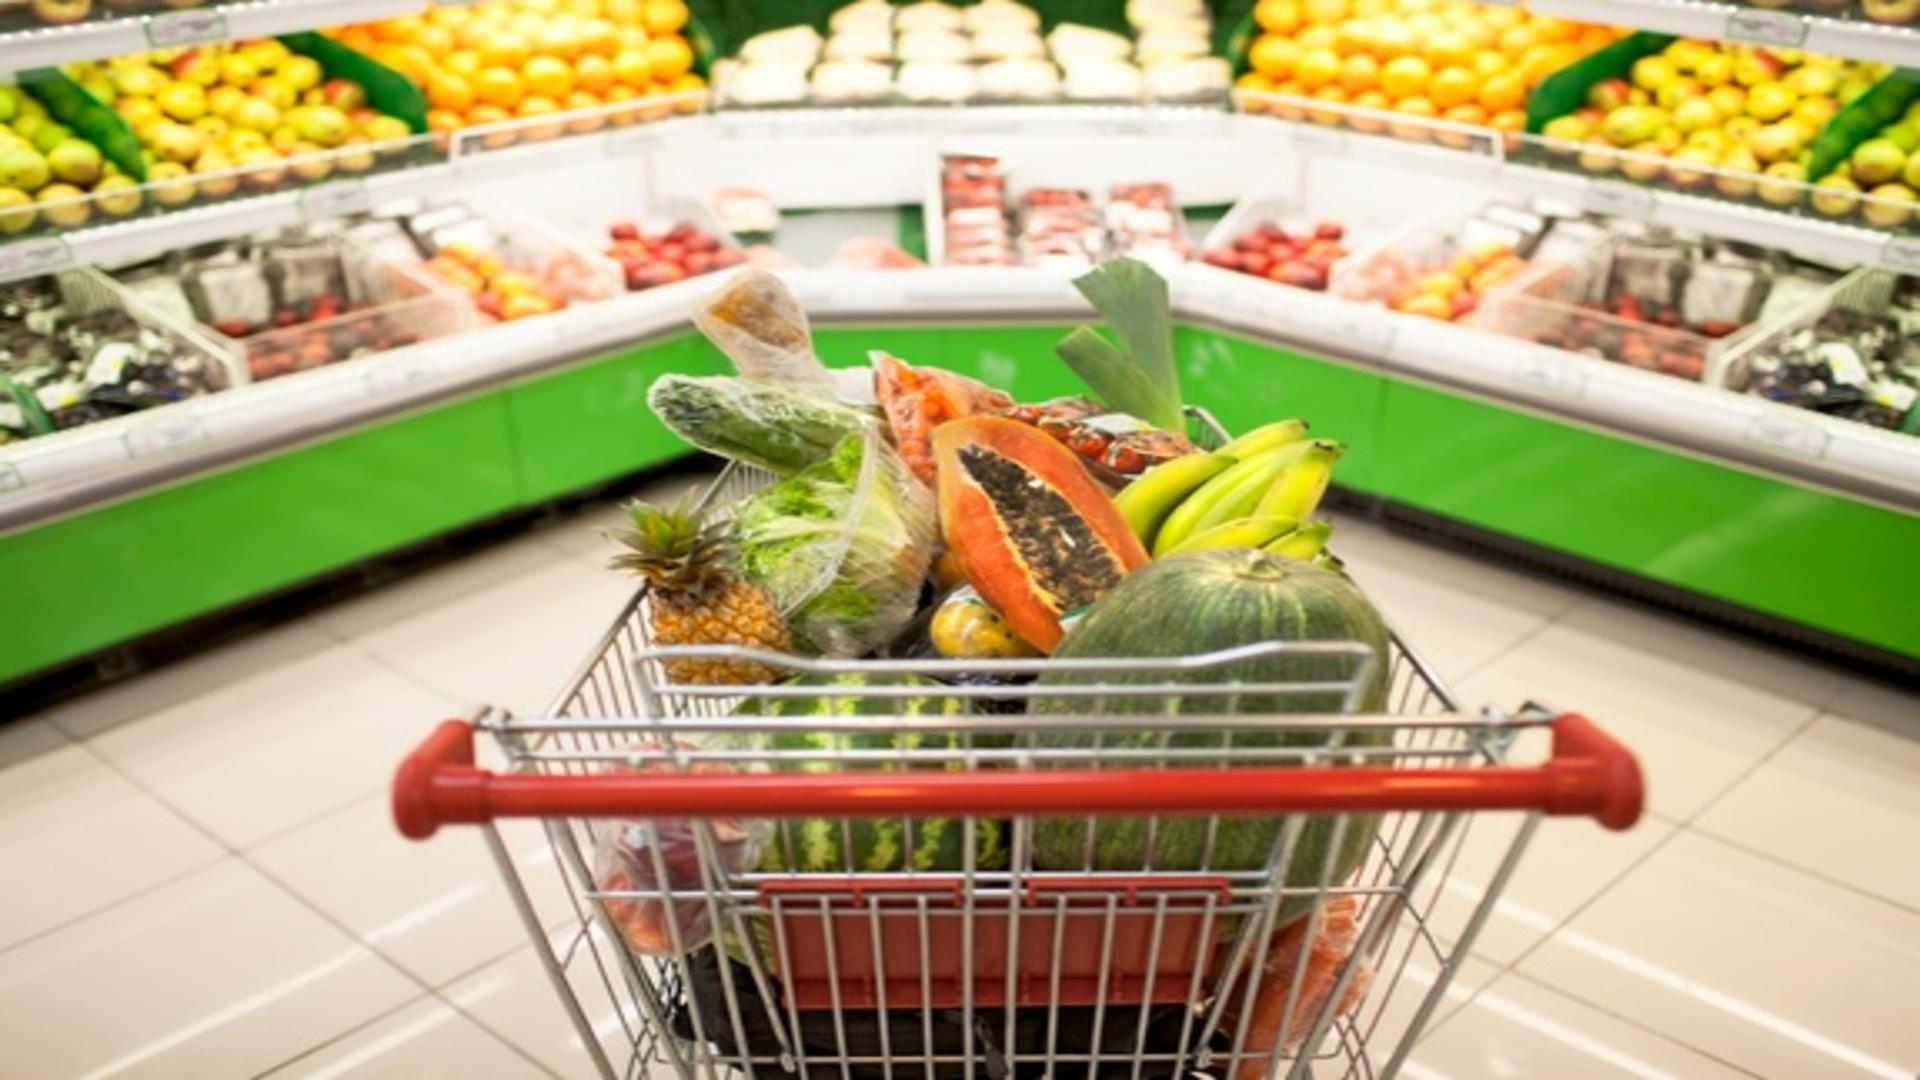 Fructe și legume aduse din străinătate, vândute în magazinele de la noi cu etichetă românească. Depozitul a fost închis